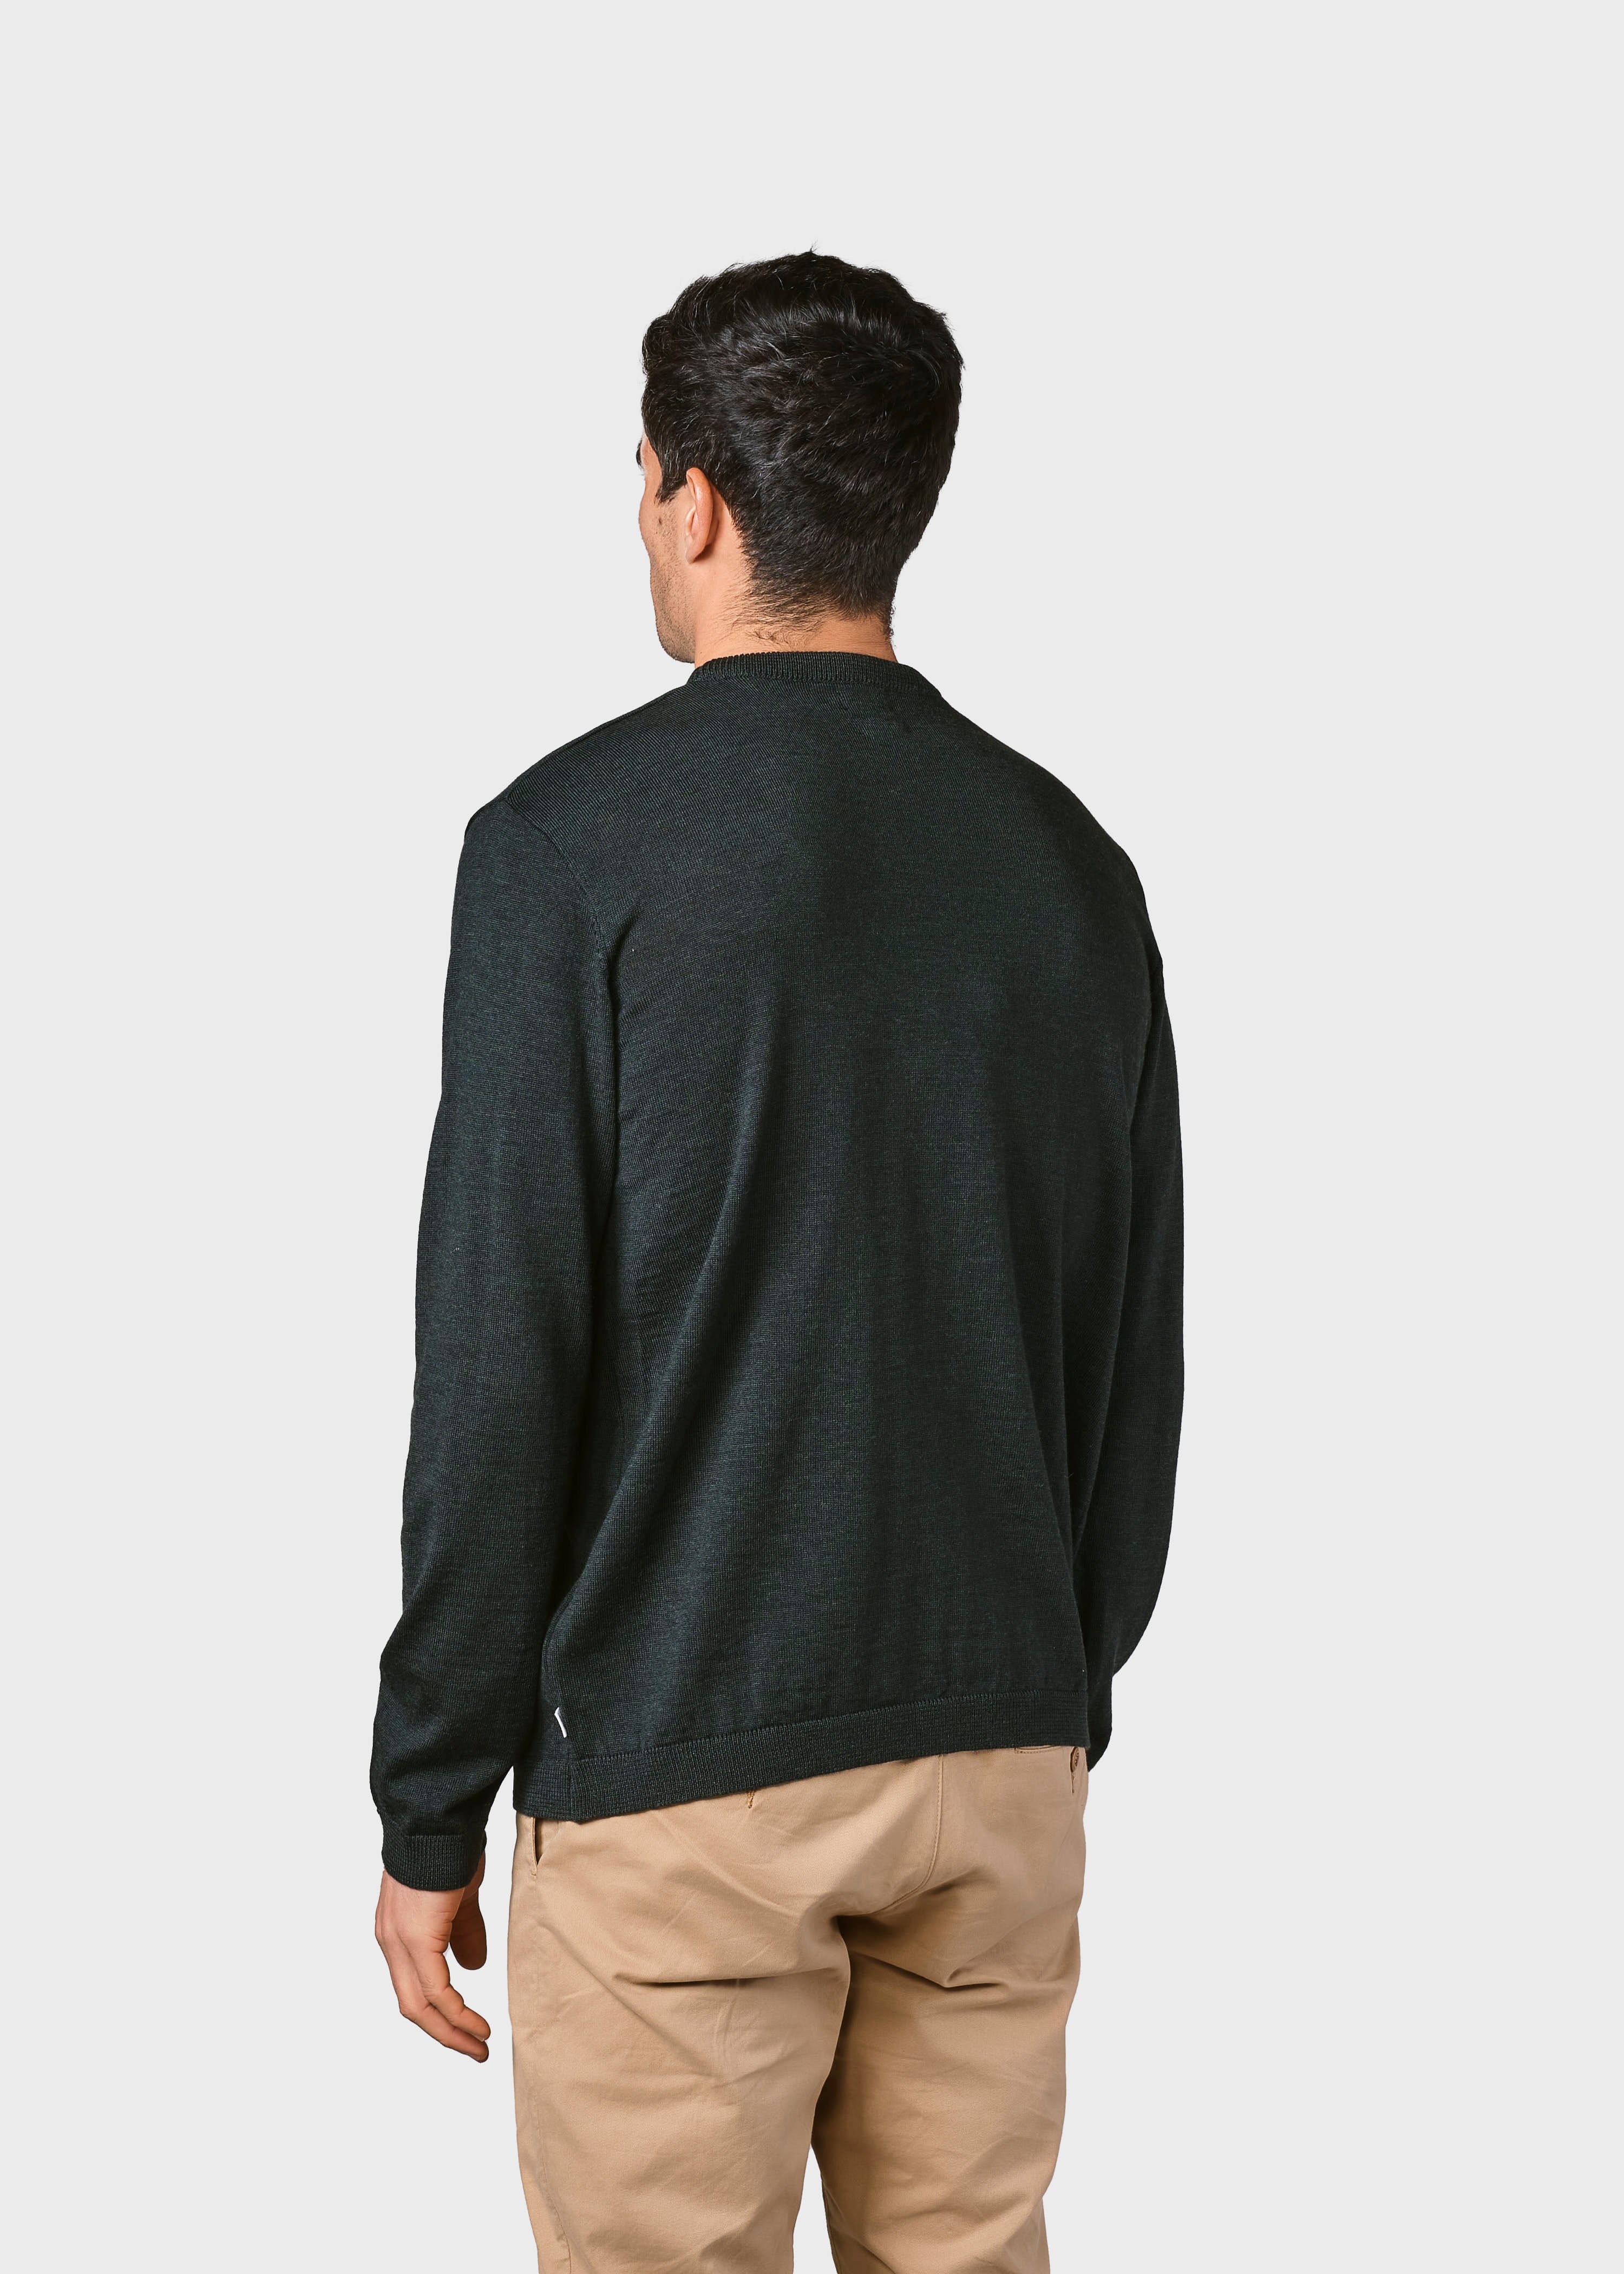 Thin Olive Green Merino Wool Sweater